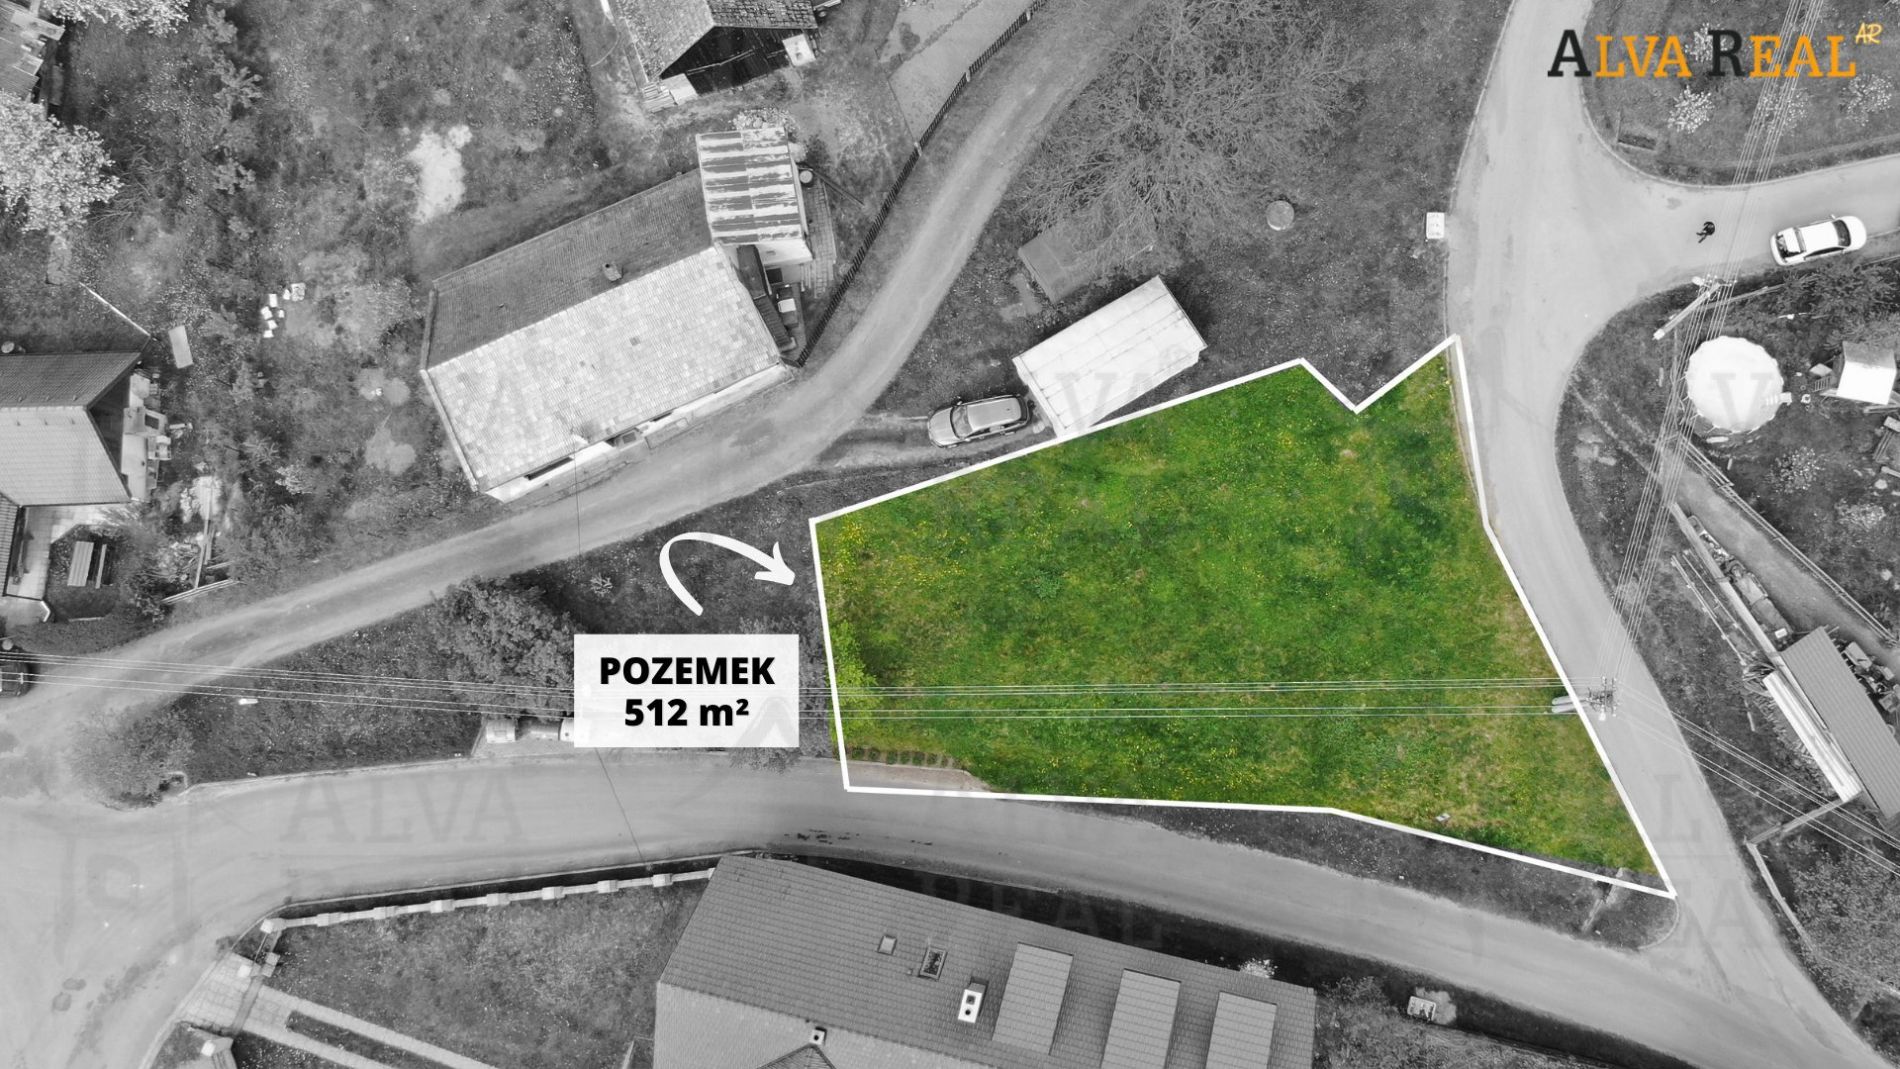 Stavební pozemek o výměře 512 m2 ve Vlkově u Letovic určený k bydlení nebo rekreaci., obrázek č. 1